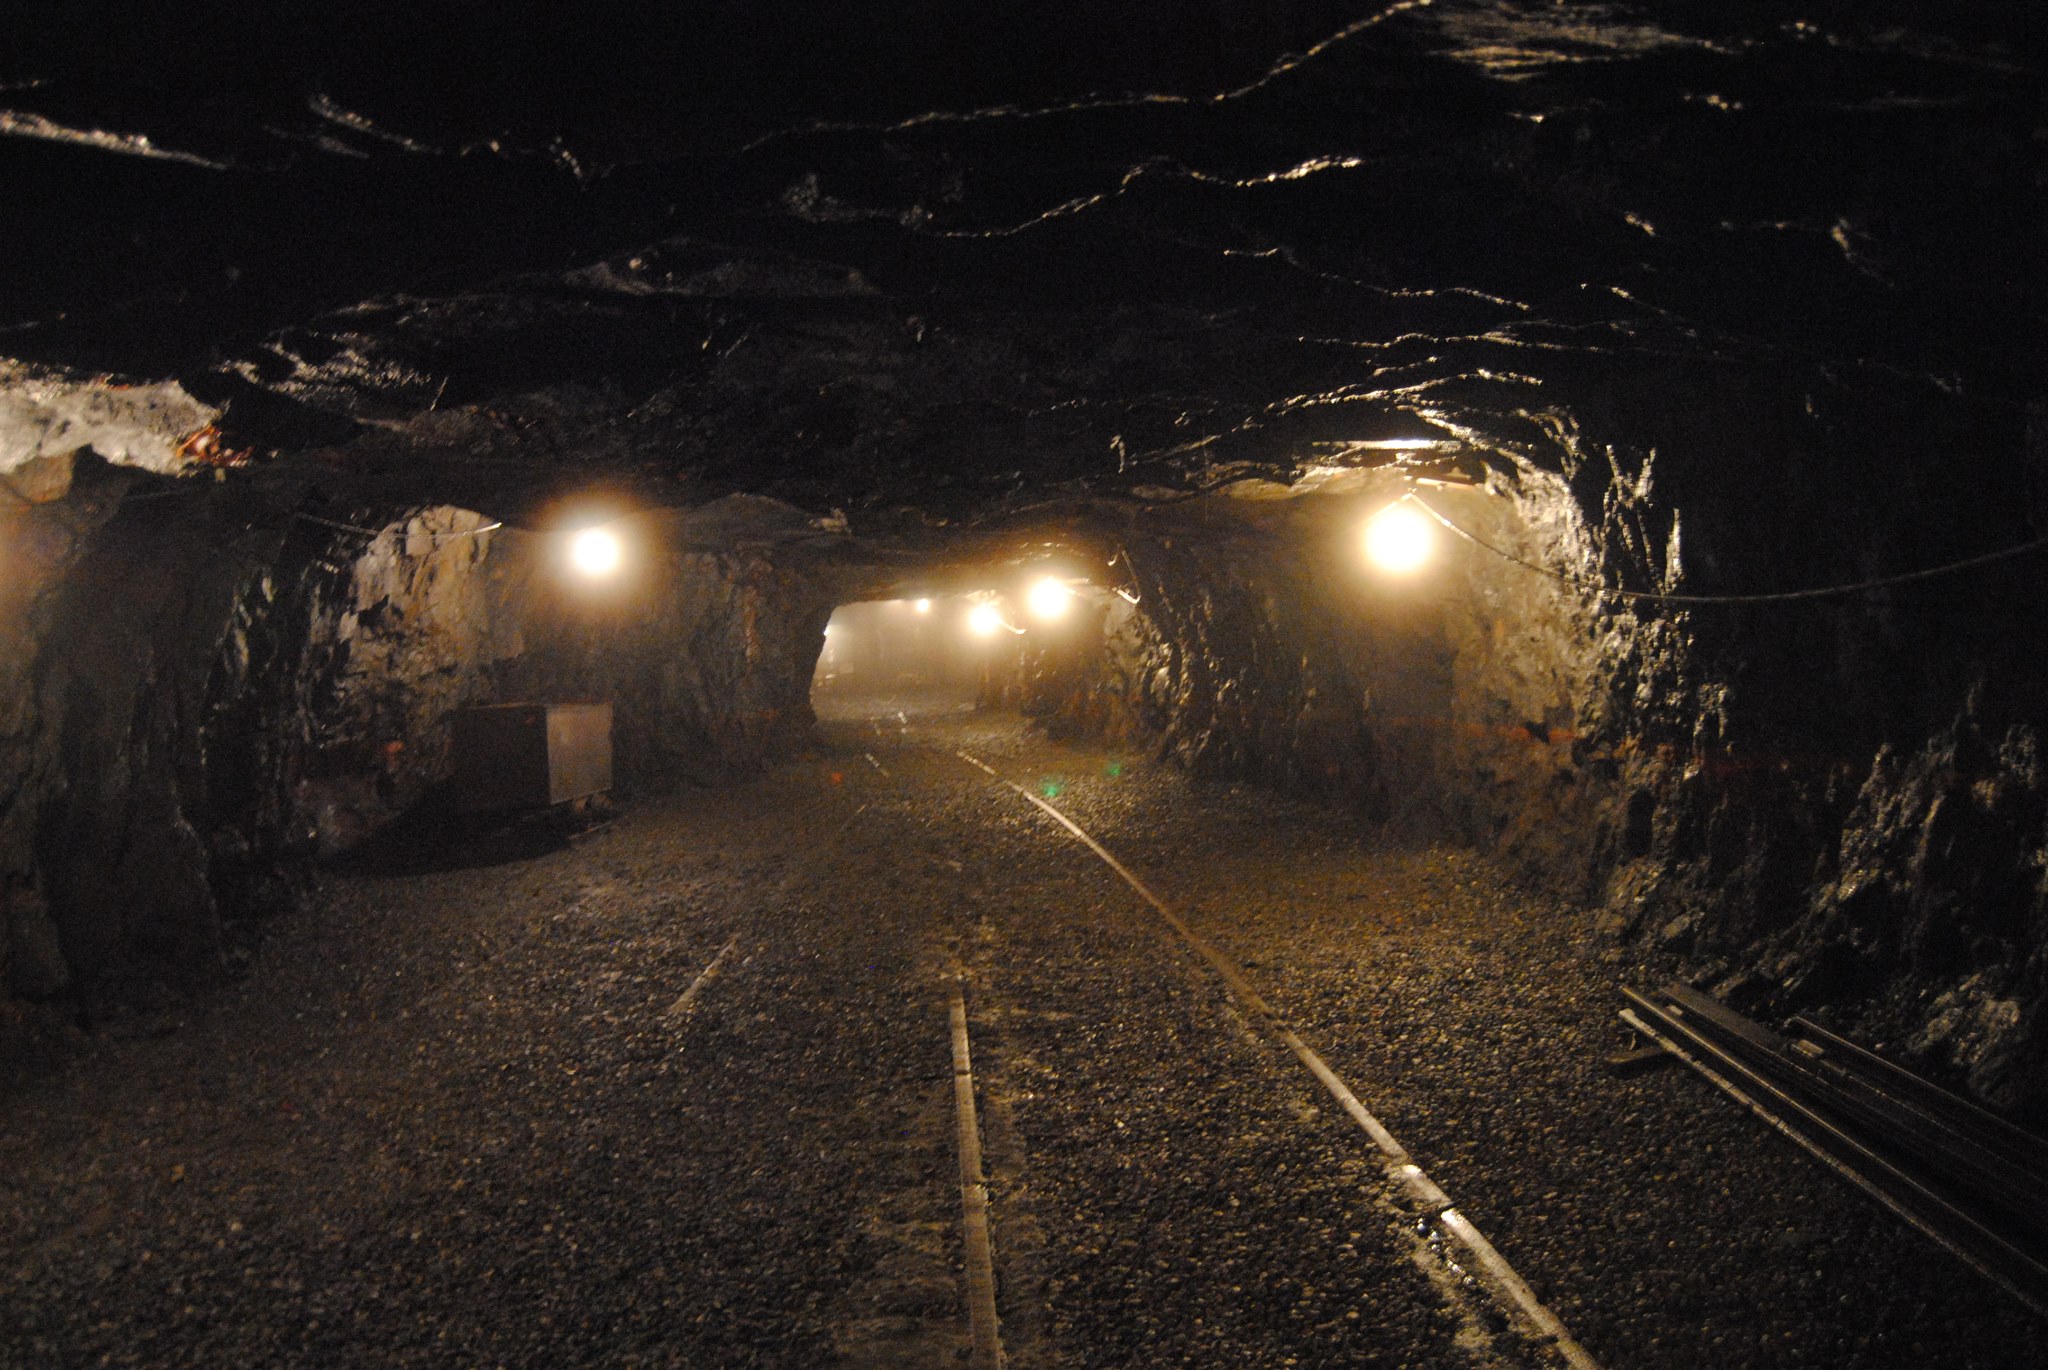 İş güvenliği açısından üretimi durdurulan madenlere yeni karar